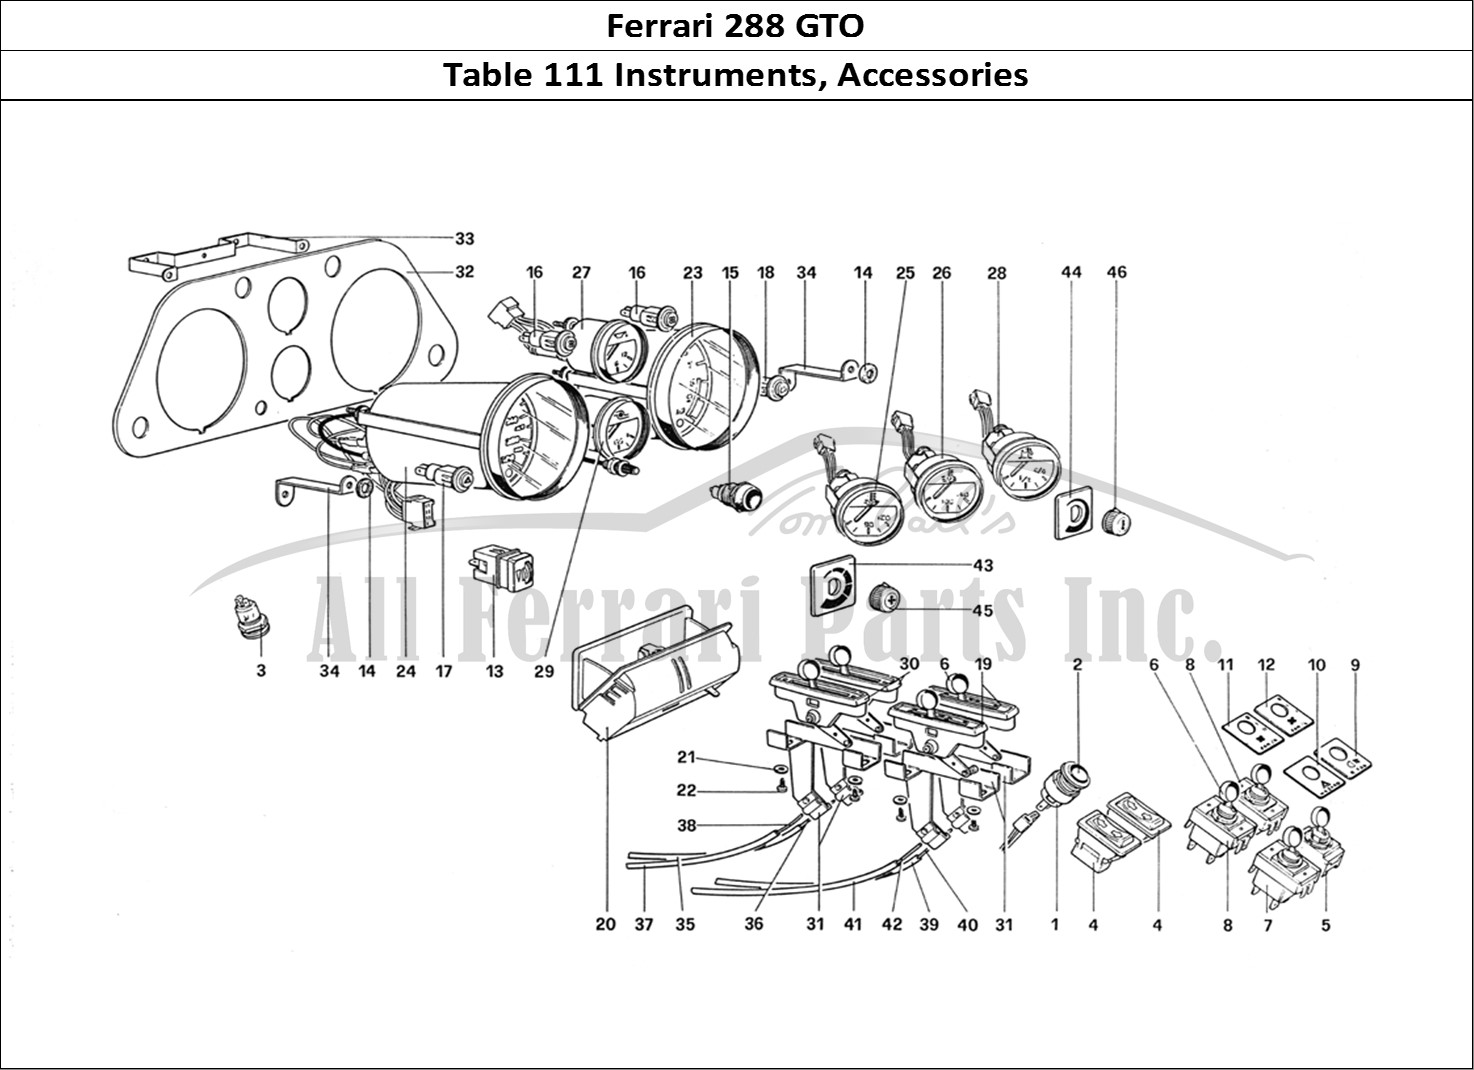 Ferrari Parts Ferrari 288 GTO Page 111 Instruments and Accessori